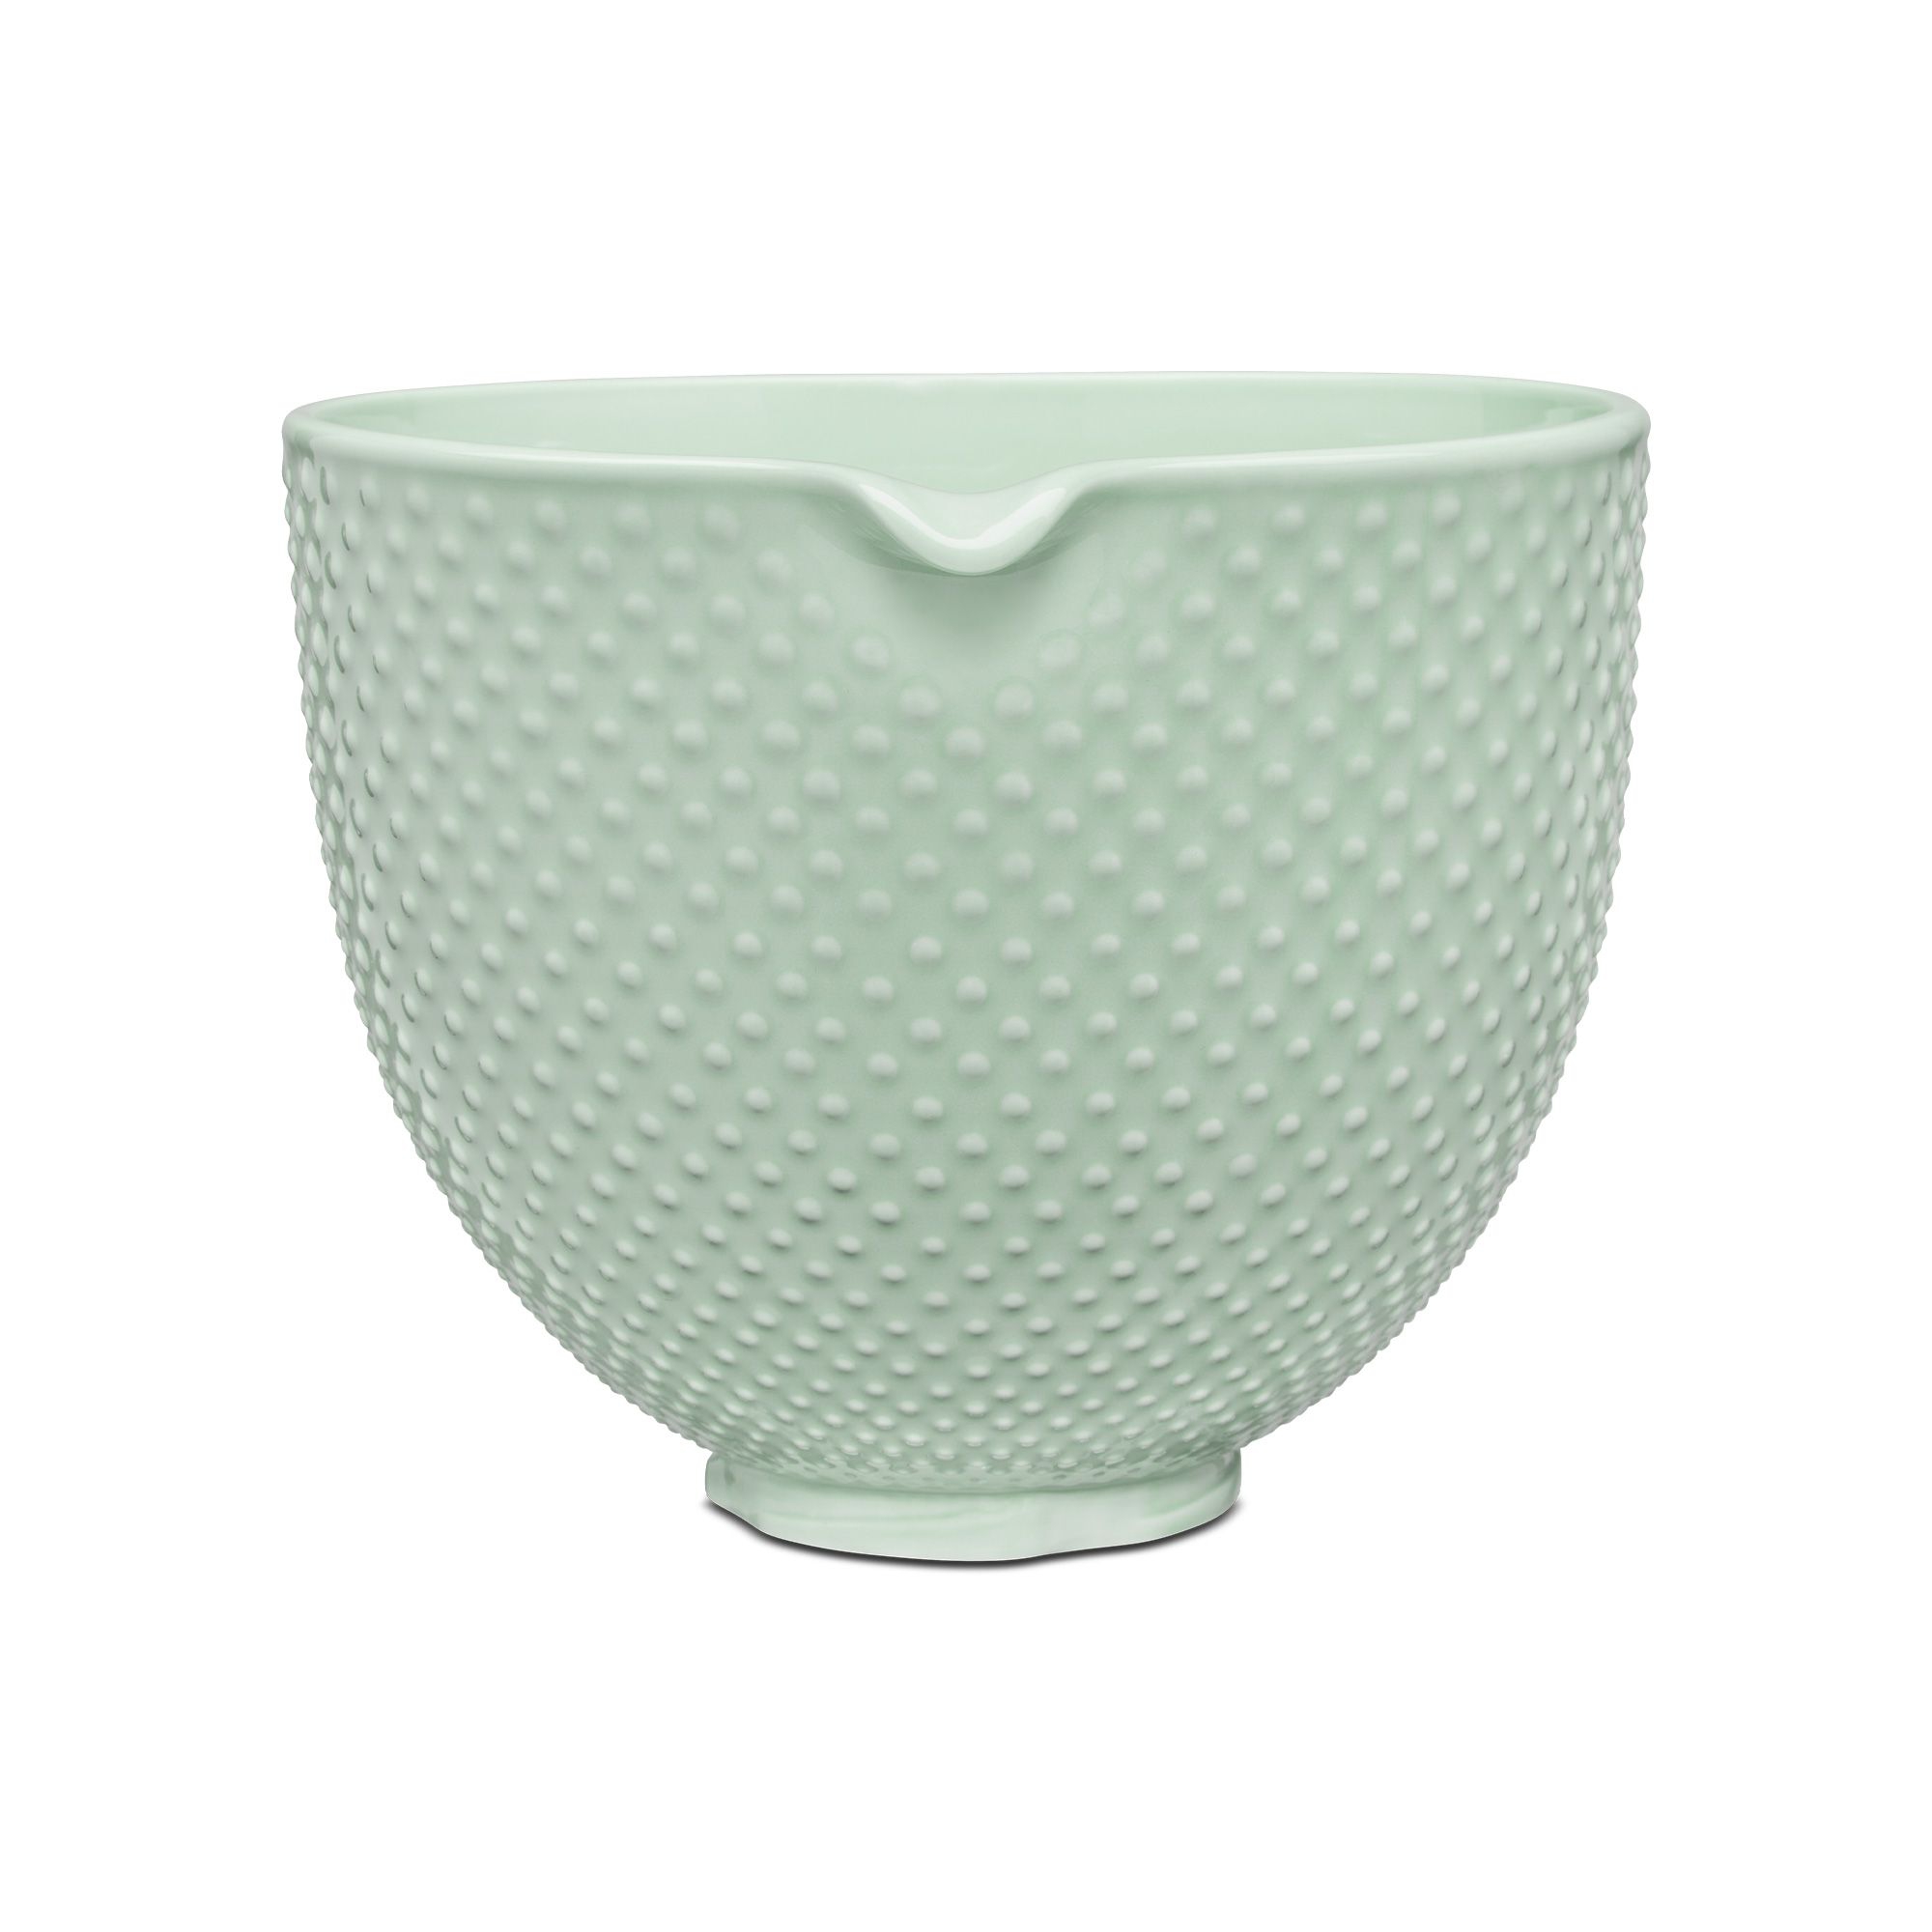 KitchenAid - 4.7 L Ceramic Bowl - dew drop